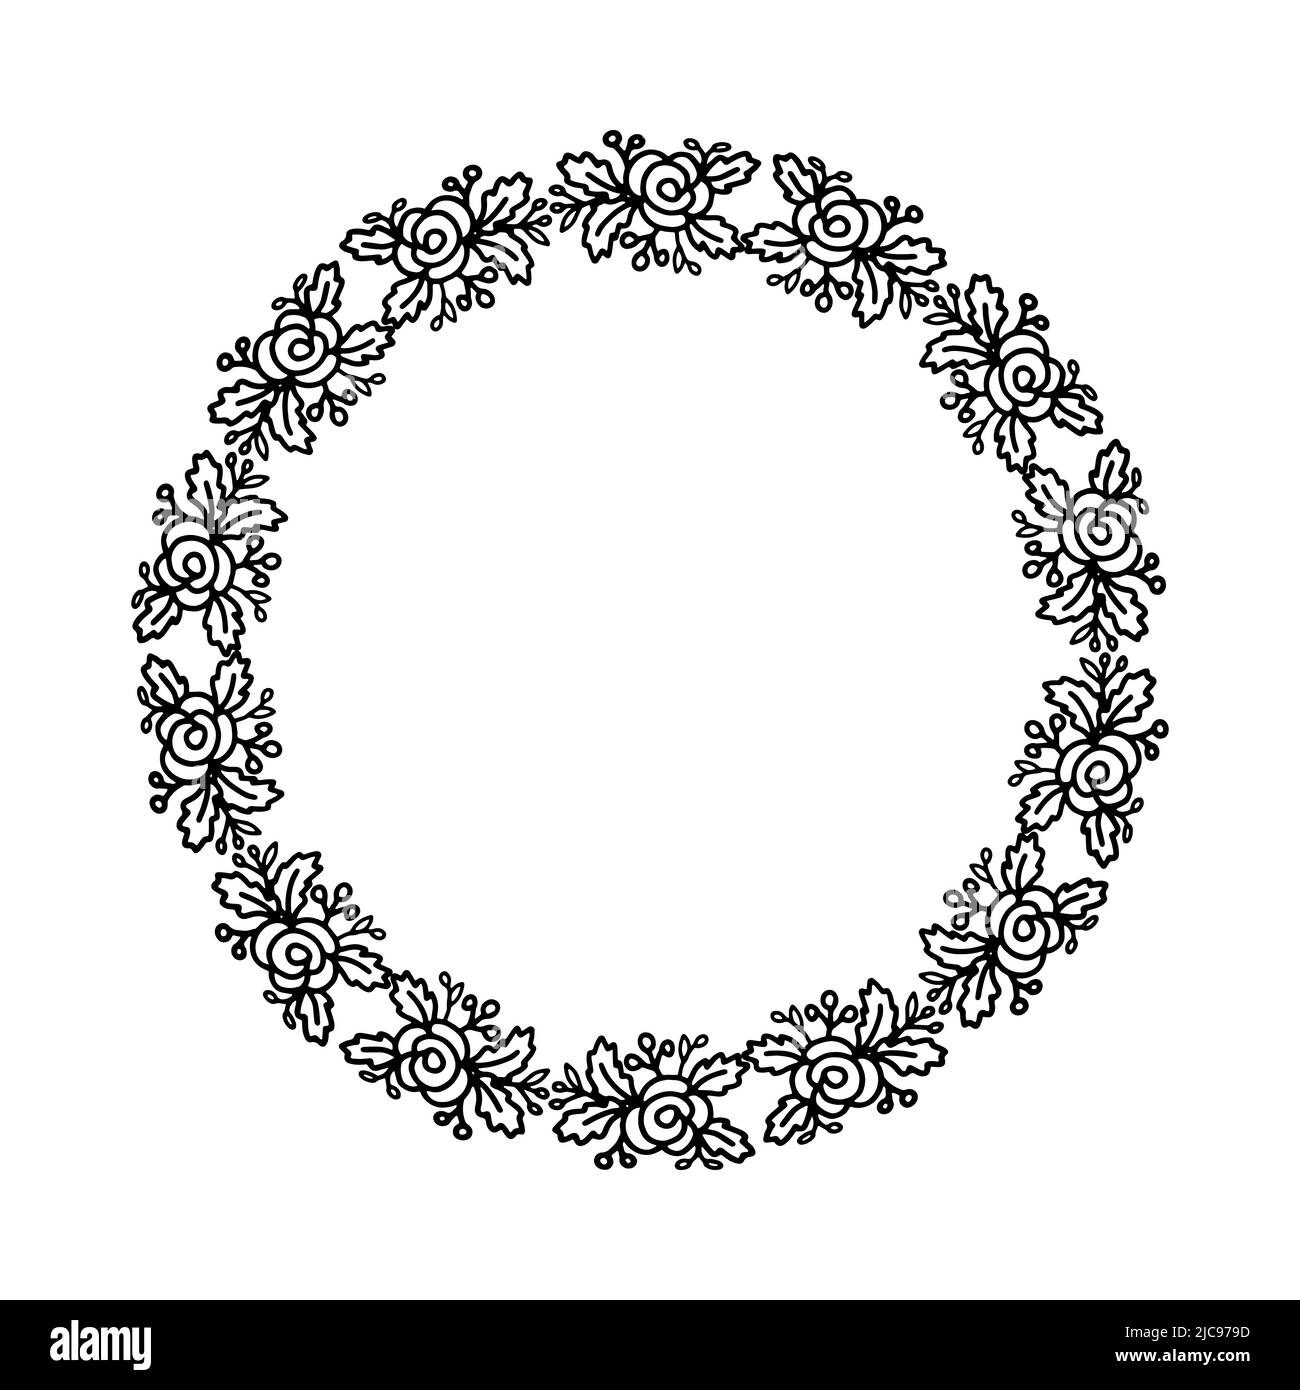 Schwarz-weißer Blumenkranz mit Rose für Design-Karte, Einladungen oder colourin Seite Stock Vektor